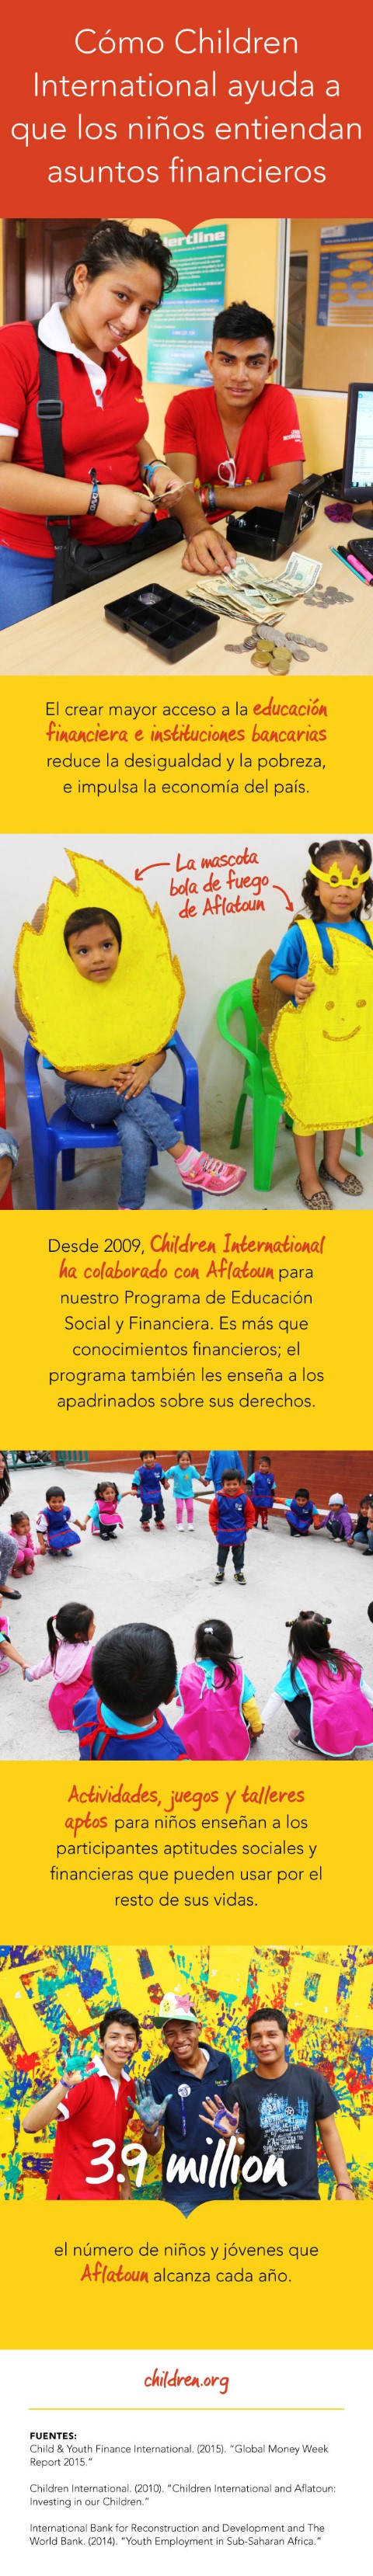 Esta infografía explica las maneras en que el Programa de Educación Social y Financiera de Children International da a los niños y jóvenes conocimientos financieros.